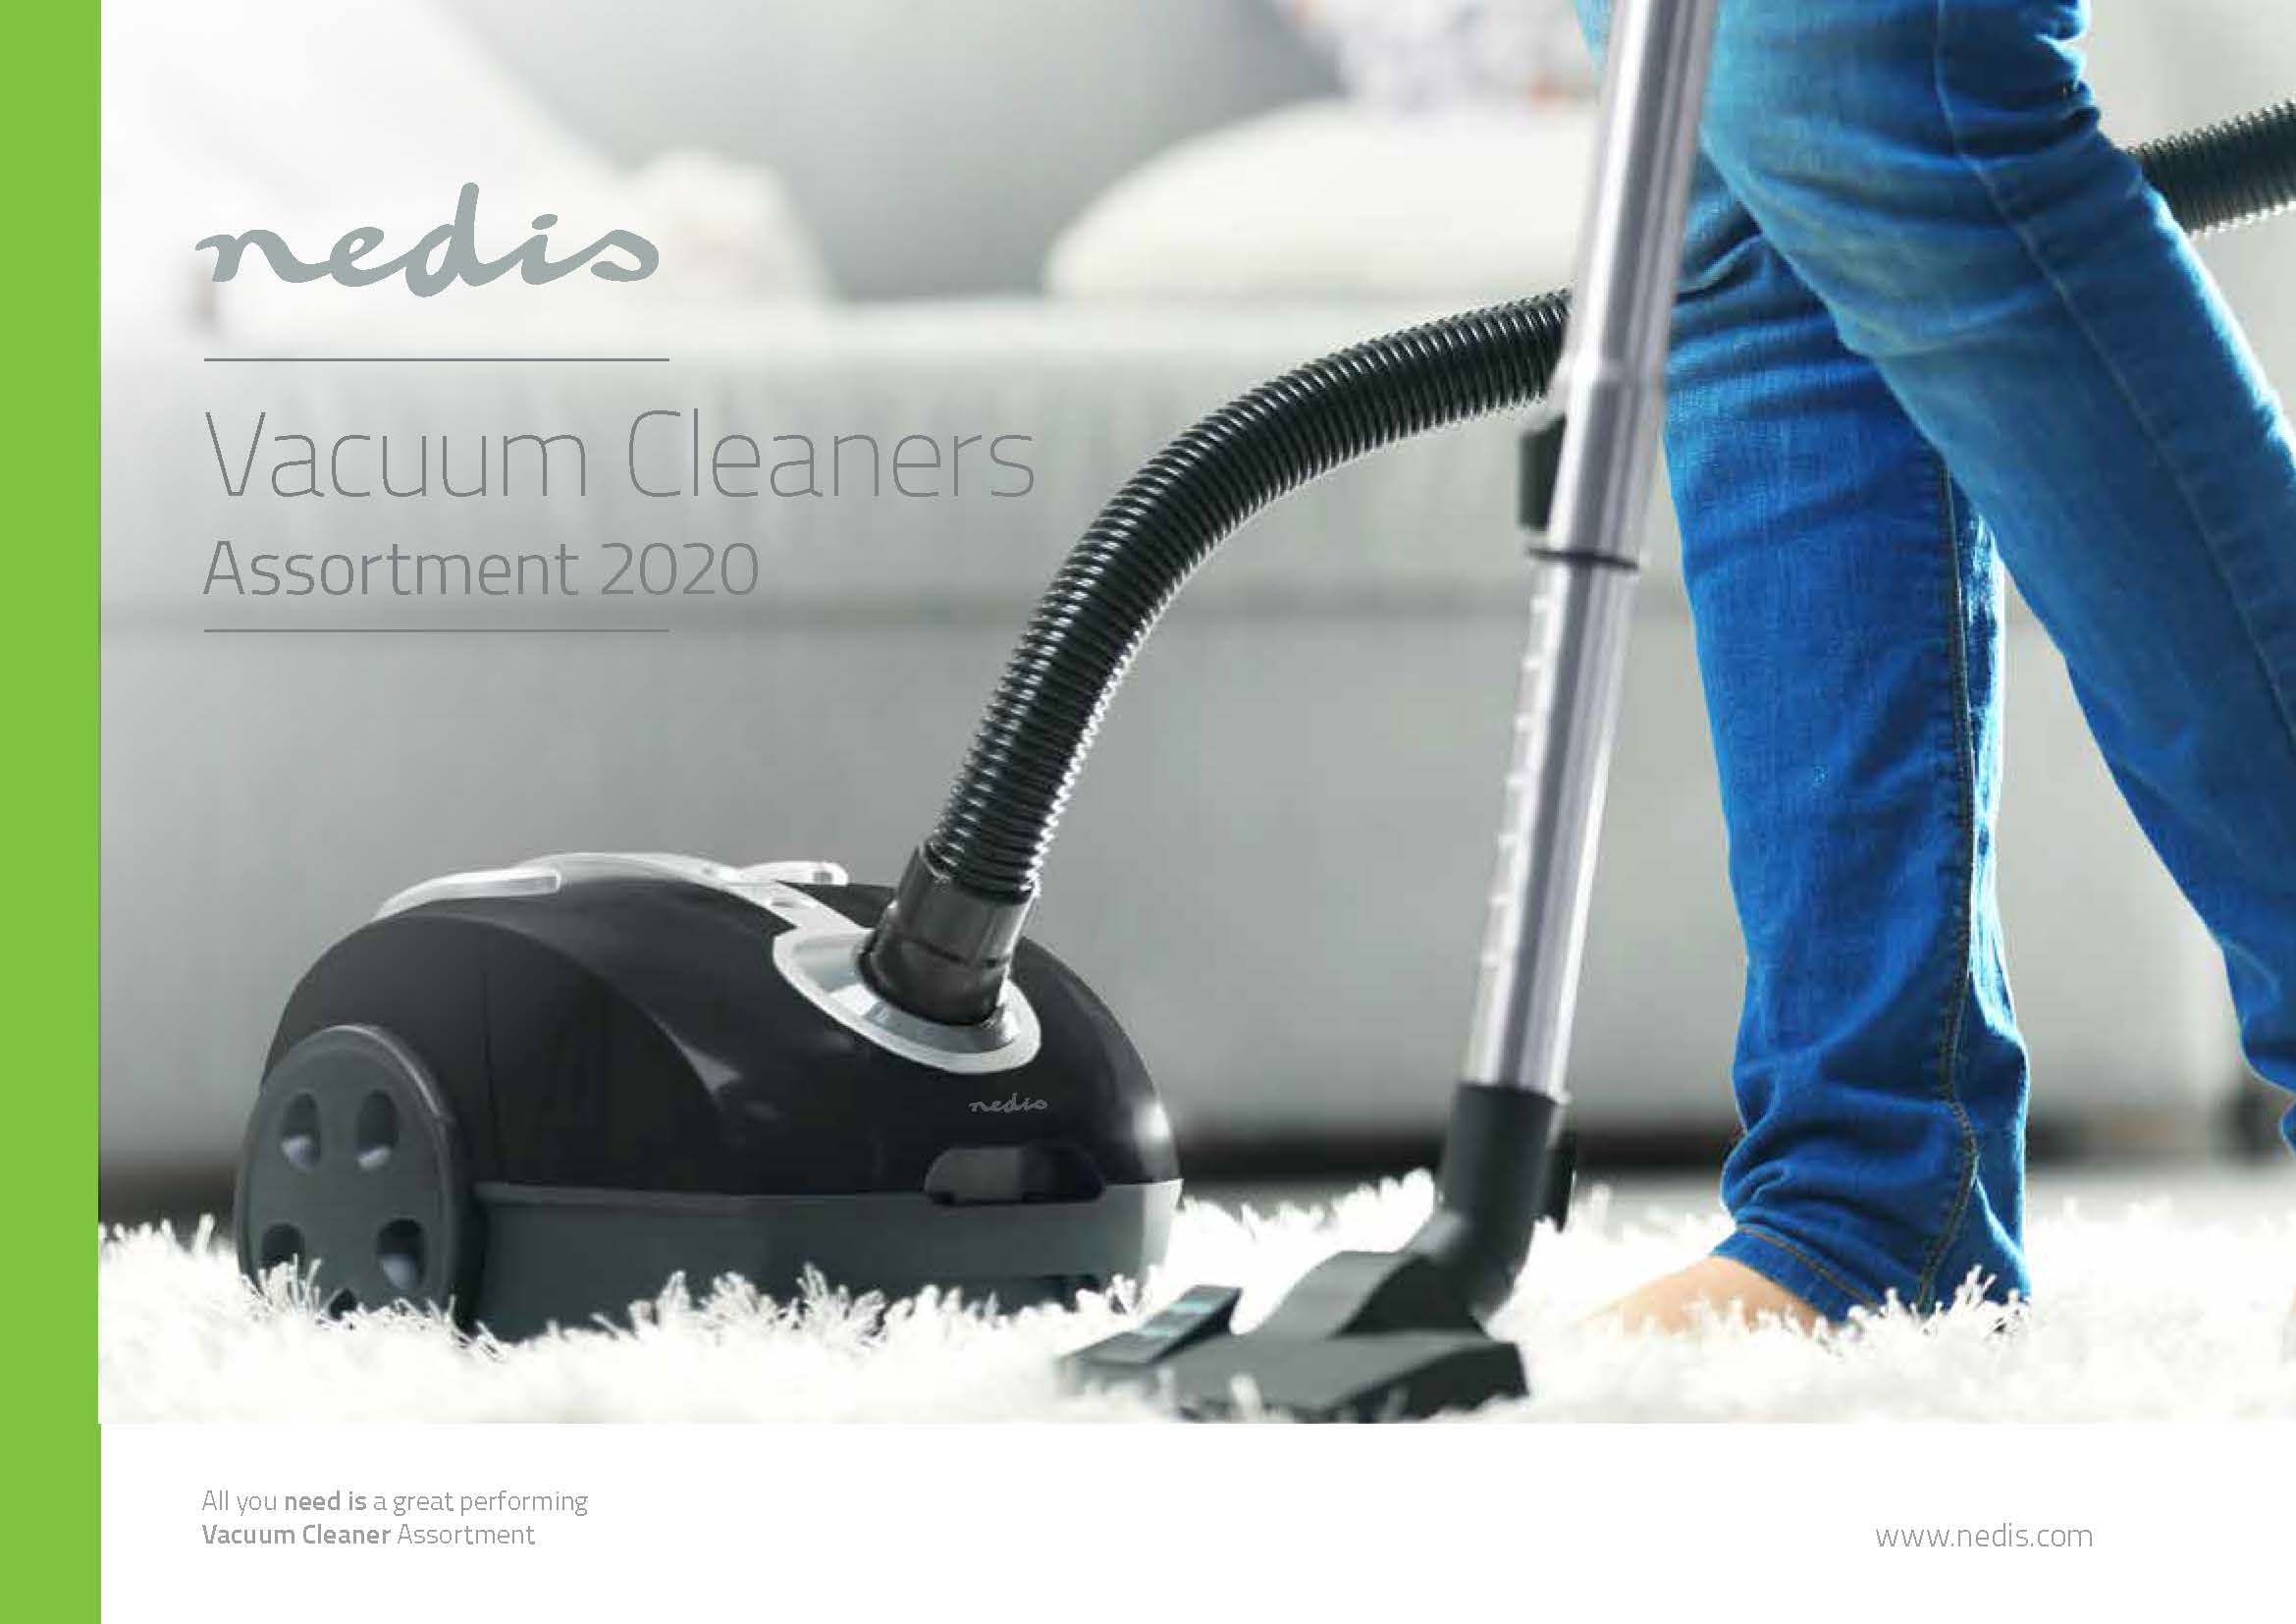 Nedis Vacuum cleaners